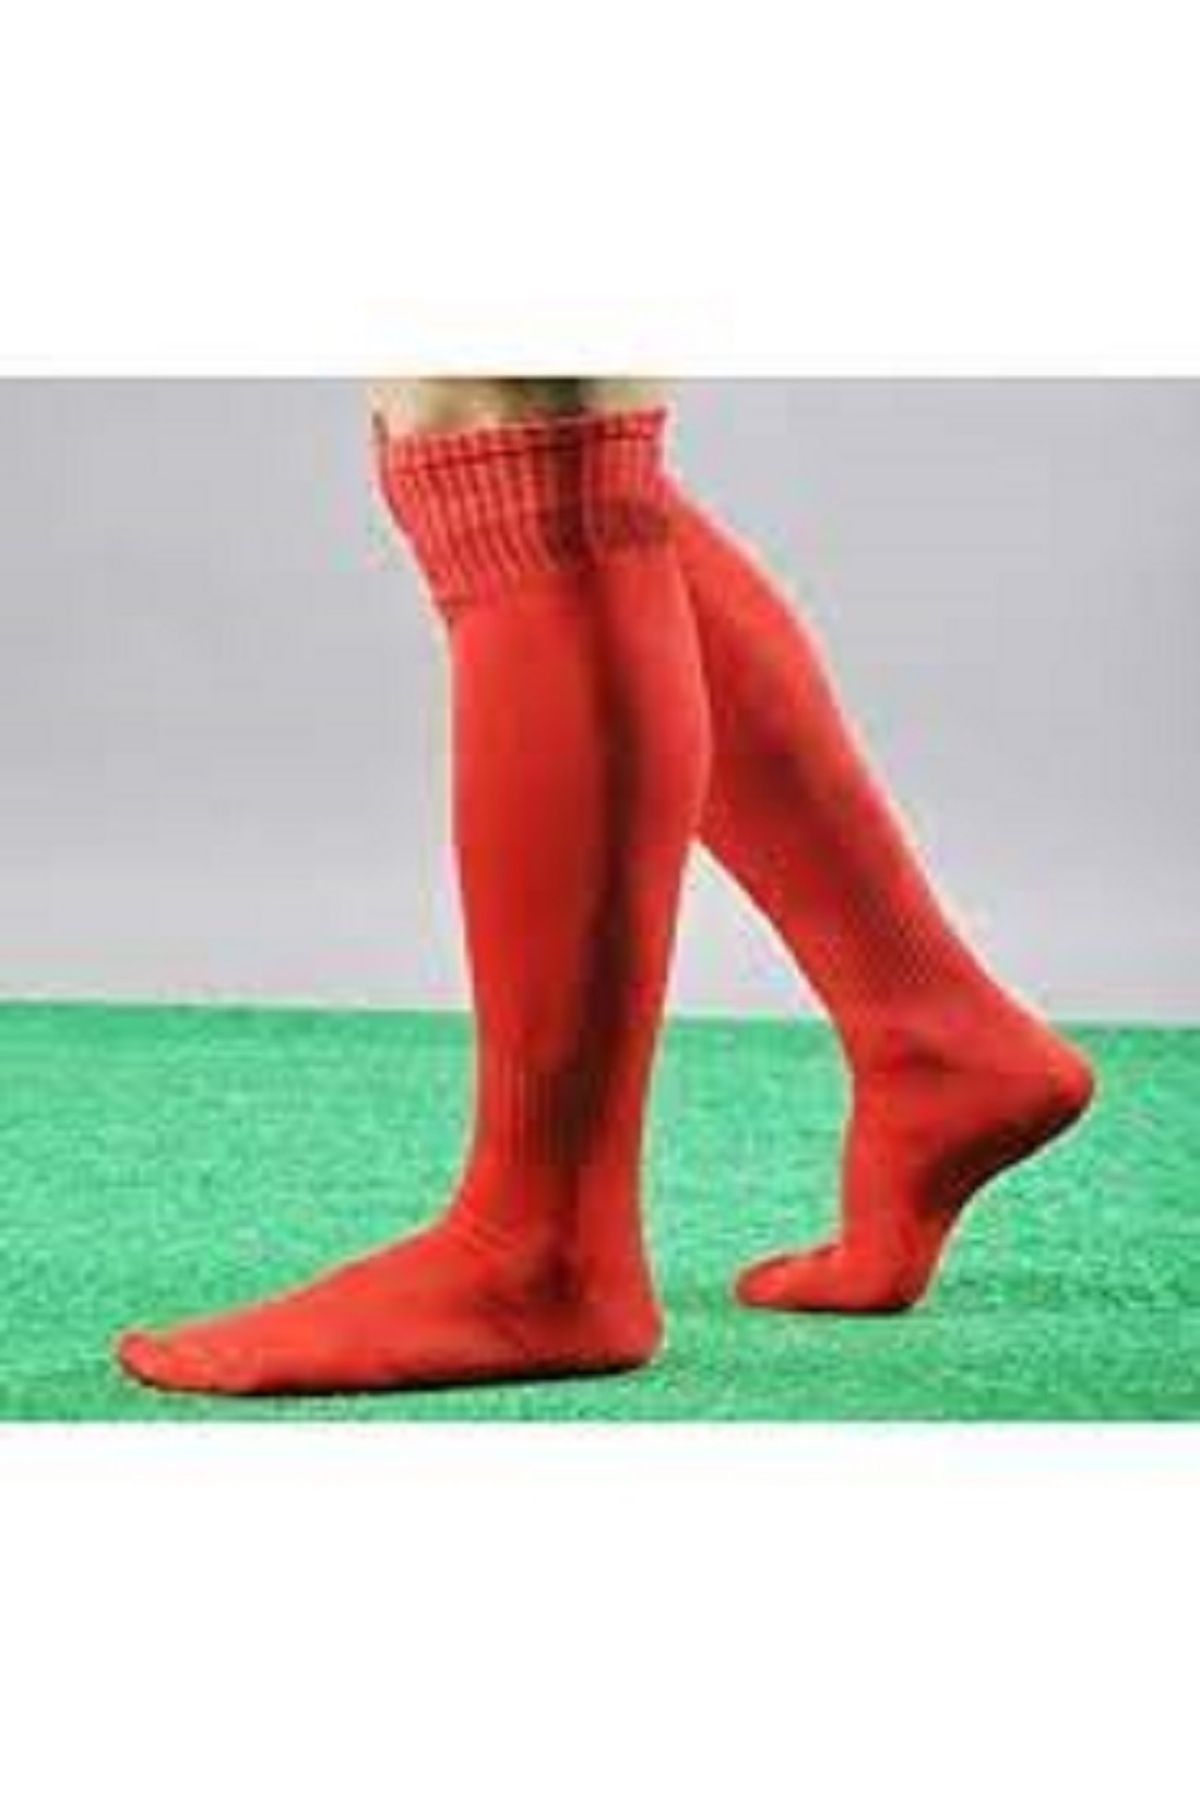 Sportlife 446 Marka Yetişkin Futbol Maç Çorabı 40-45 Tozluk, Konç, Halı Saha Çorabı